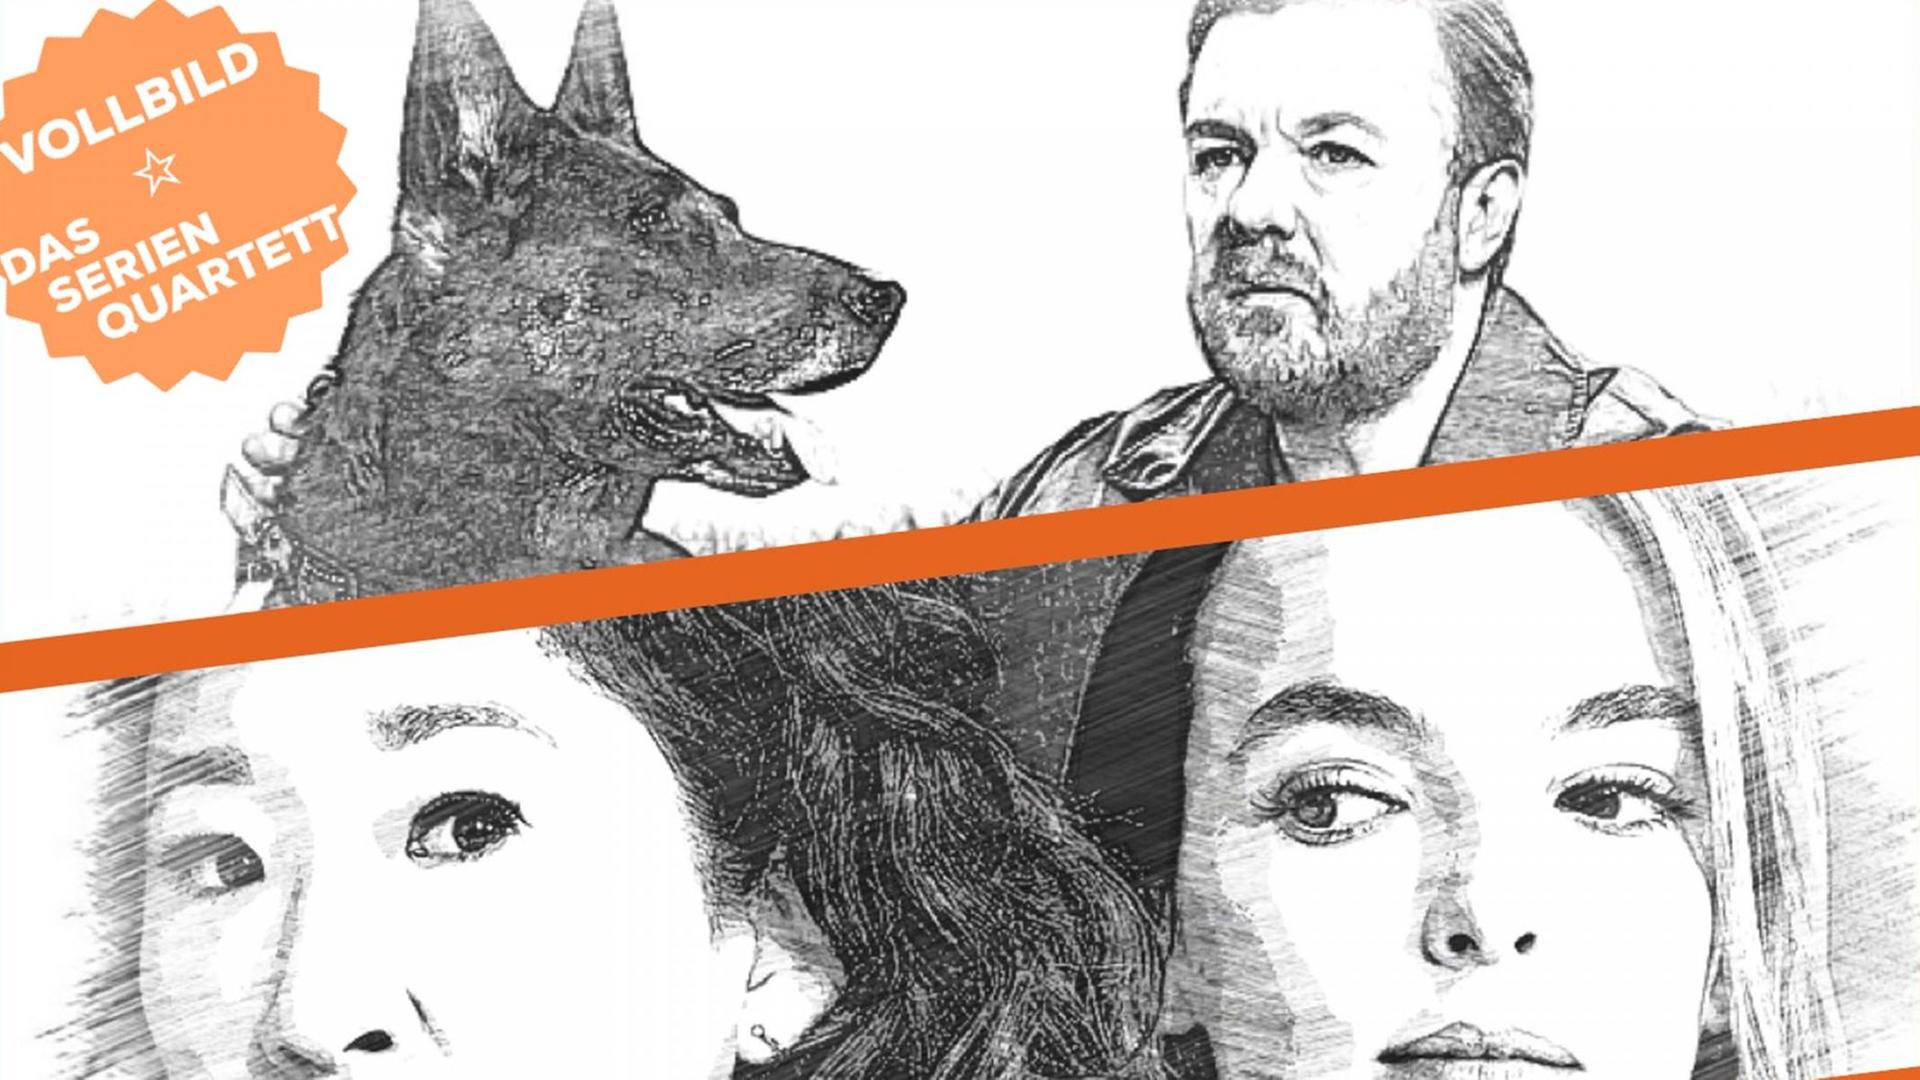 Collage im Bleistift-Schraffur-Stil aus einem Bild mit dem Komiker Ricky Gervais und einem Hund sowie einer Szene aus "Killing Spree", in der zwei Frauen zu sehen sind.